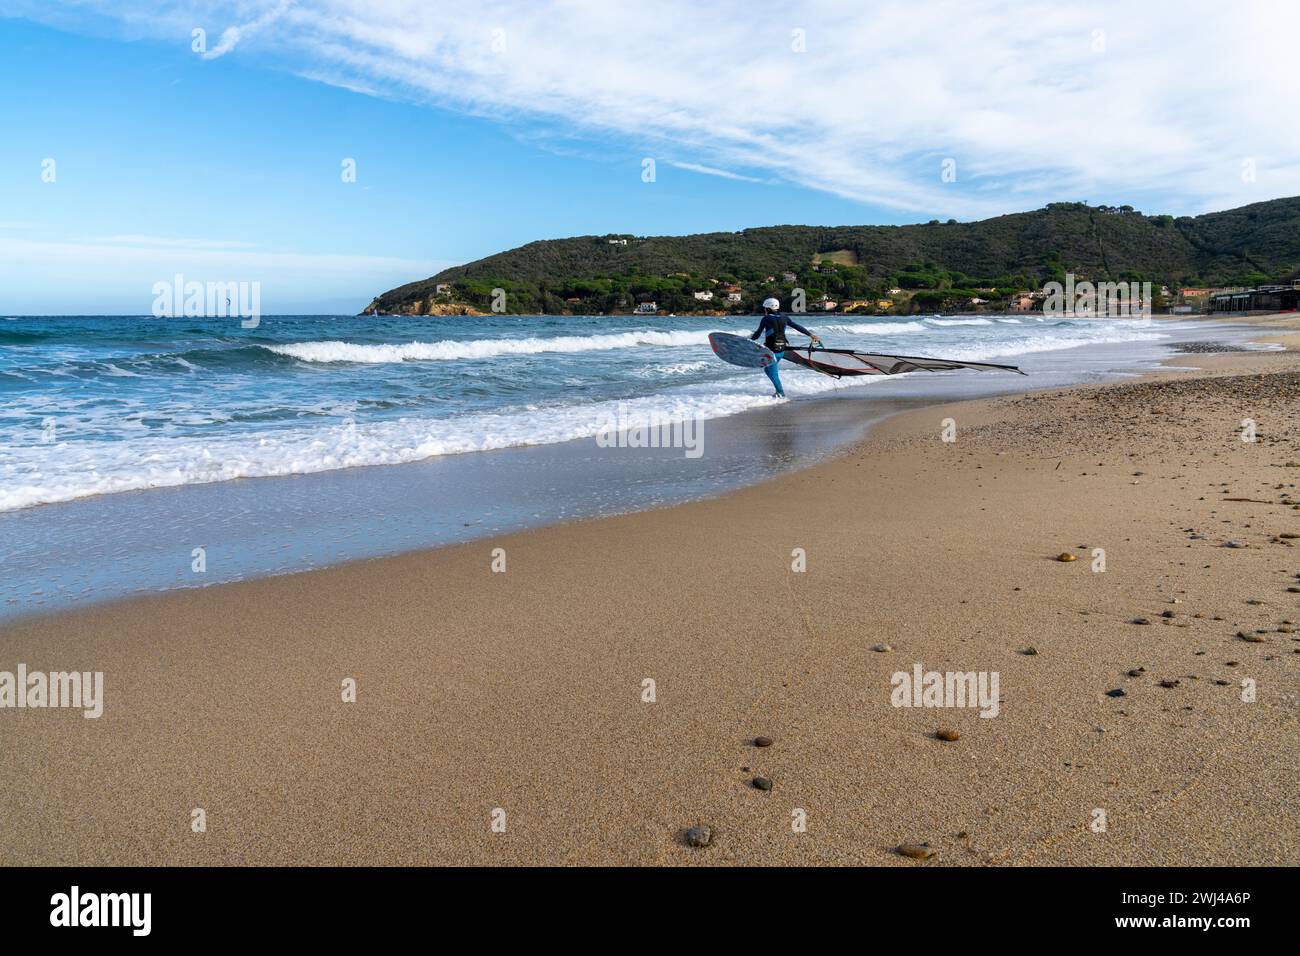 Mann, der sich auf das Windsurfen am Procchio Beach auf Elba Island vorbereitet Stockfoto